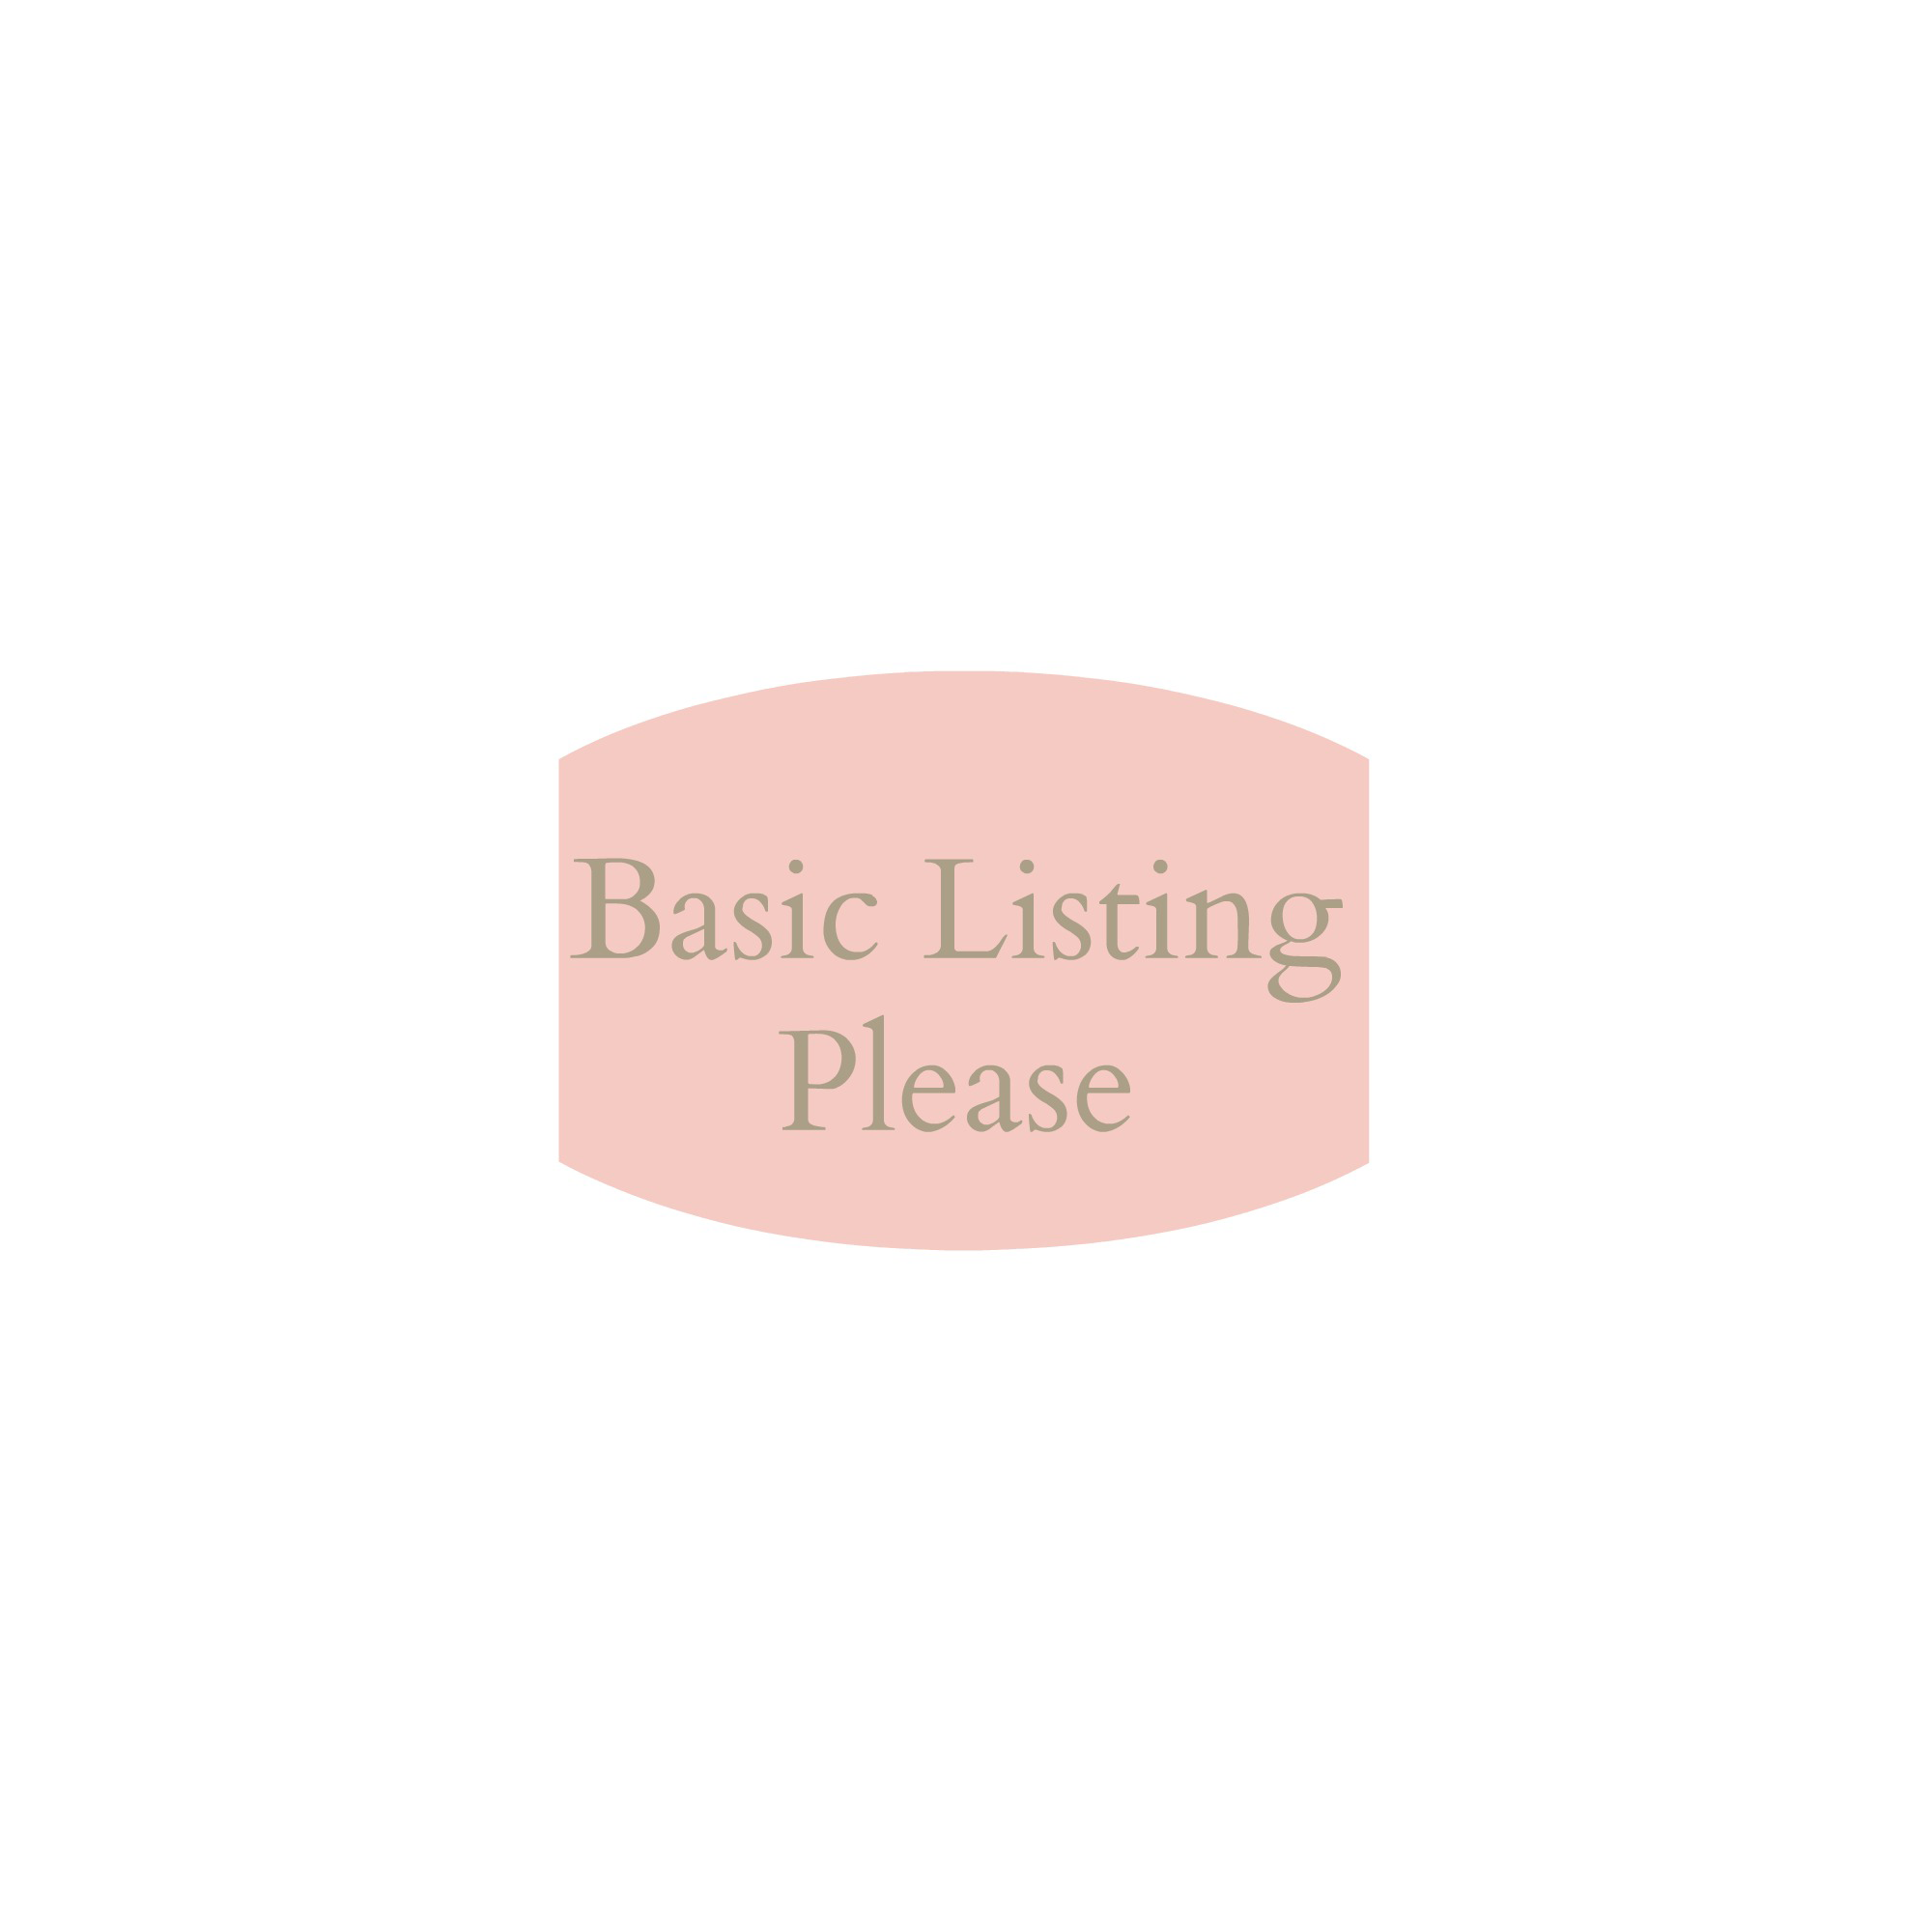 Pretty Pear Bride Bridal Salon Directory - Plus Size Bridal Salon Directory - Basic Listing